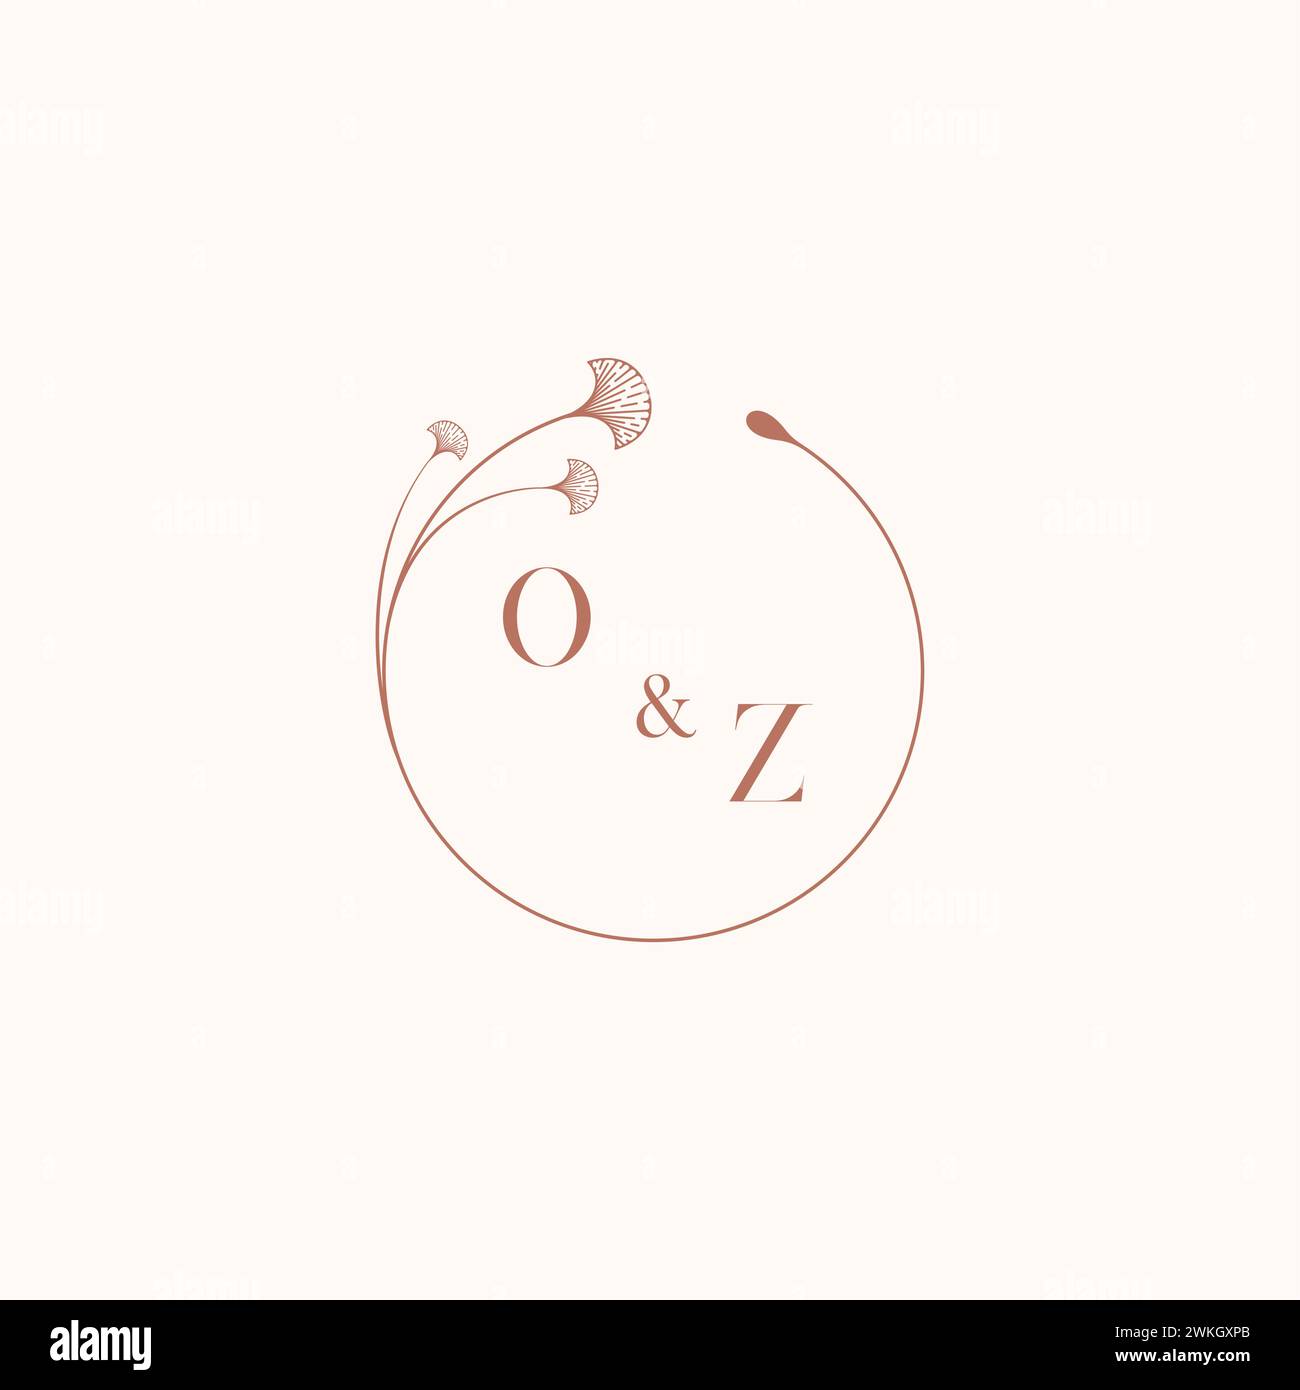 OZ wedding monogram logo designideas as inspiration Stock Vector